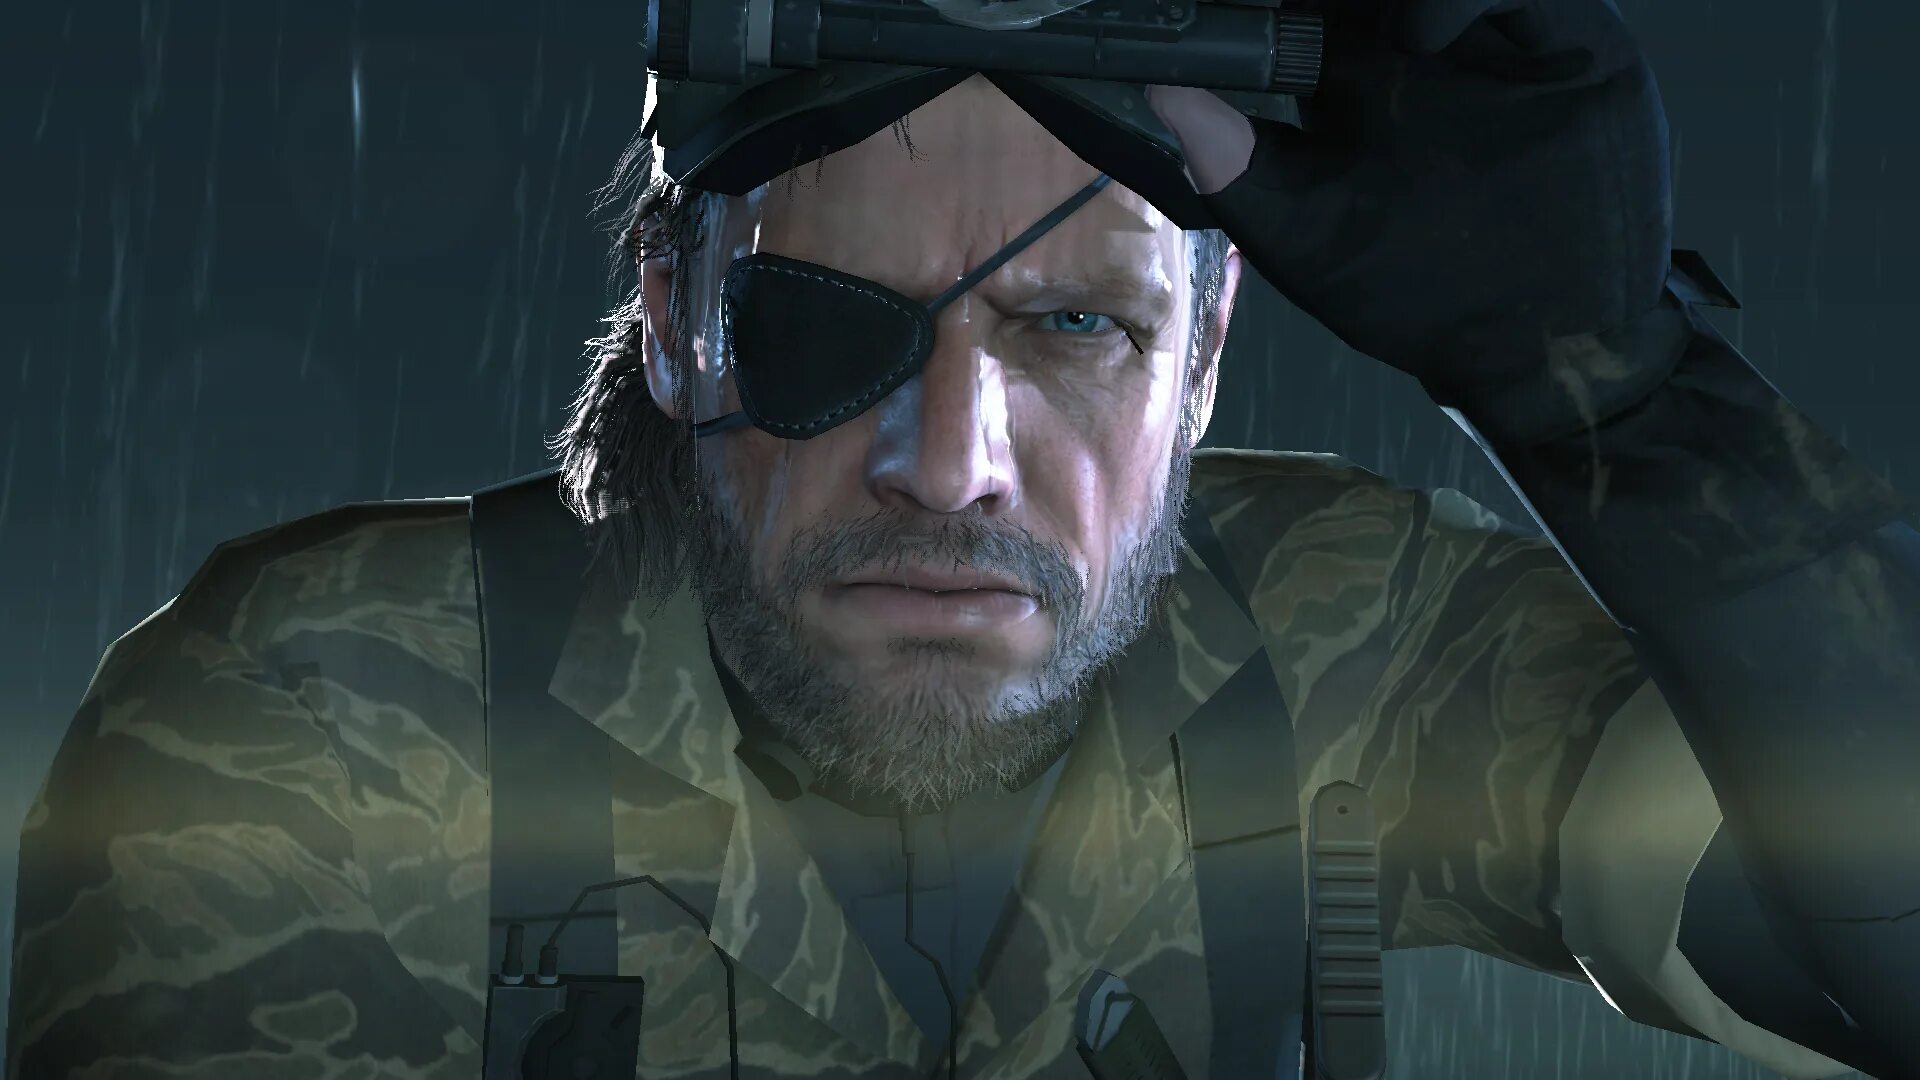 Биг босс биография. Биг босс Metal Gear 5 ground Zeroes. MGS 5 ground Zeroes Снейк. Солид Снейк. Metal Gear Solid 6.